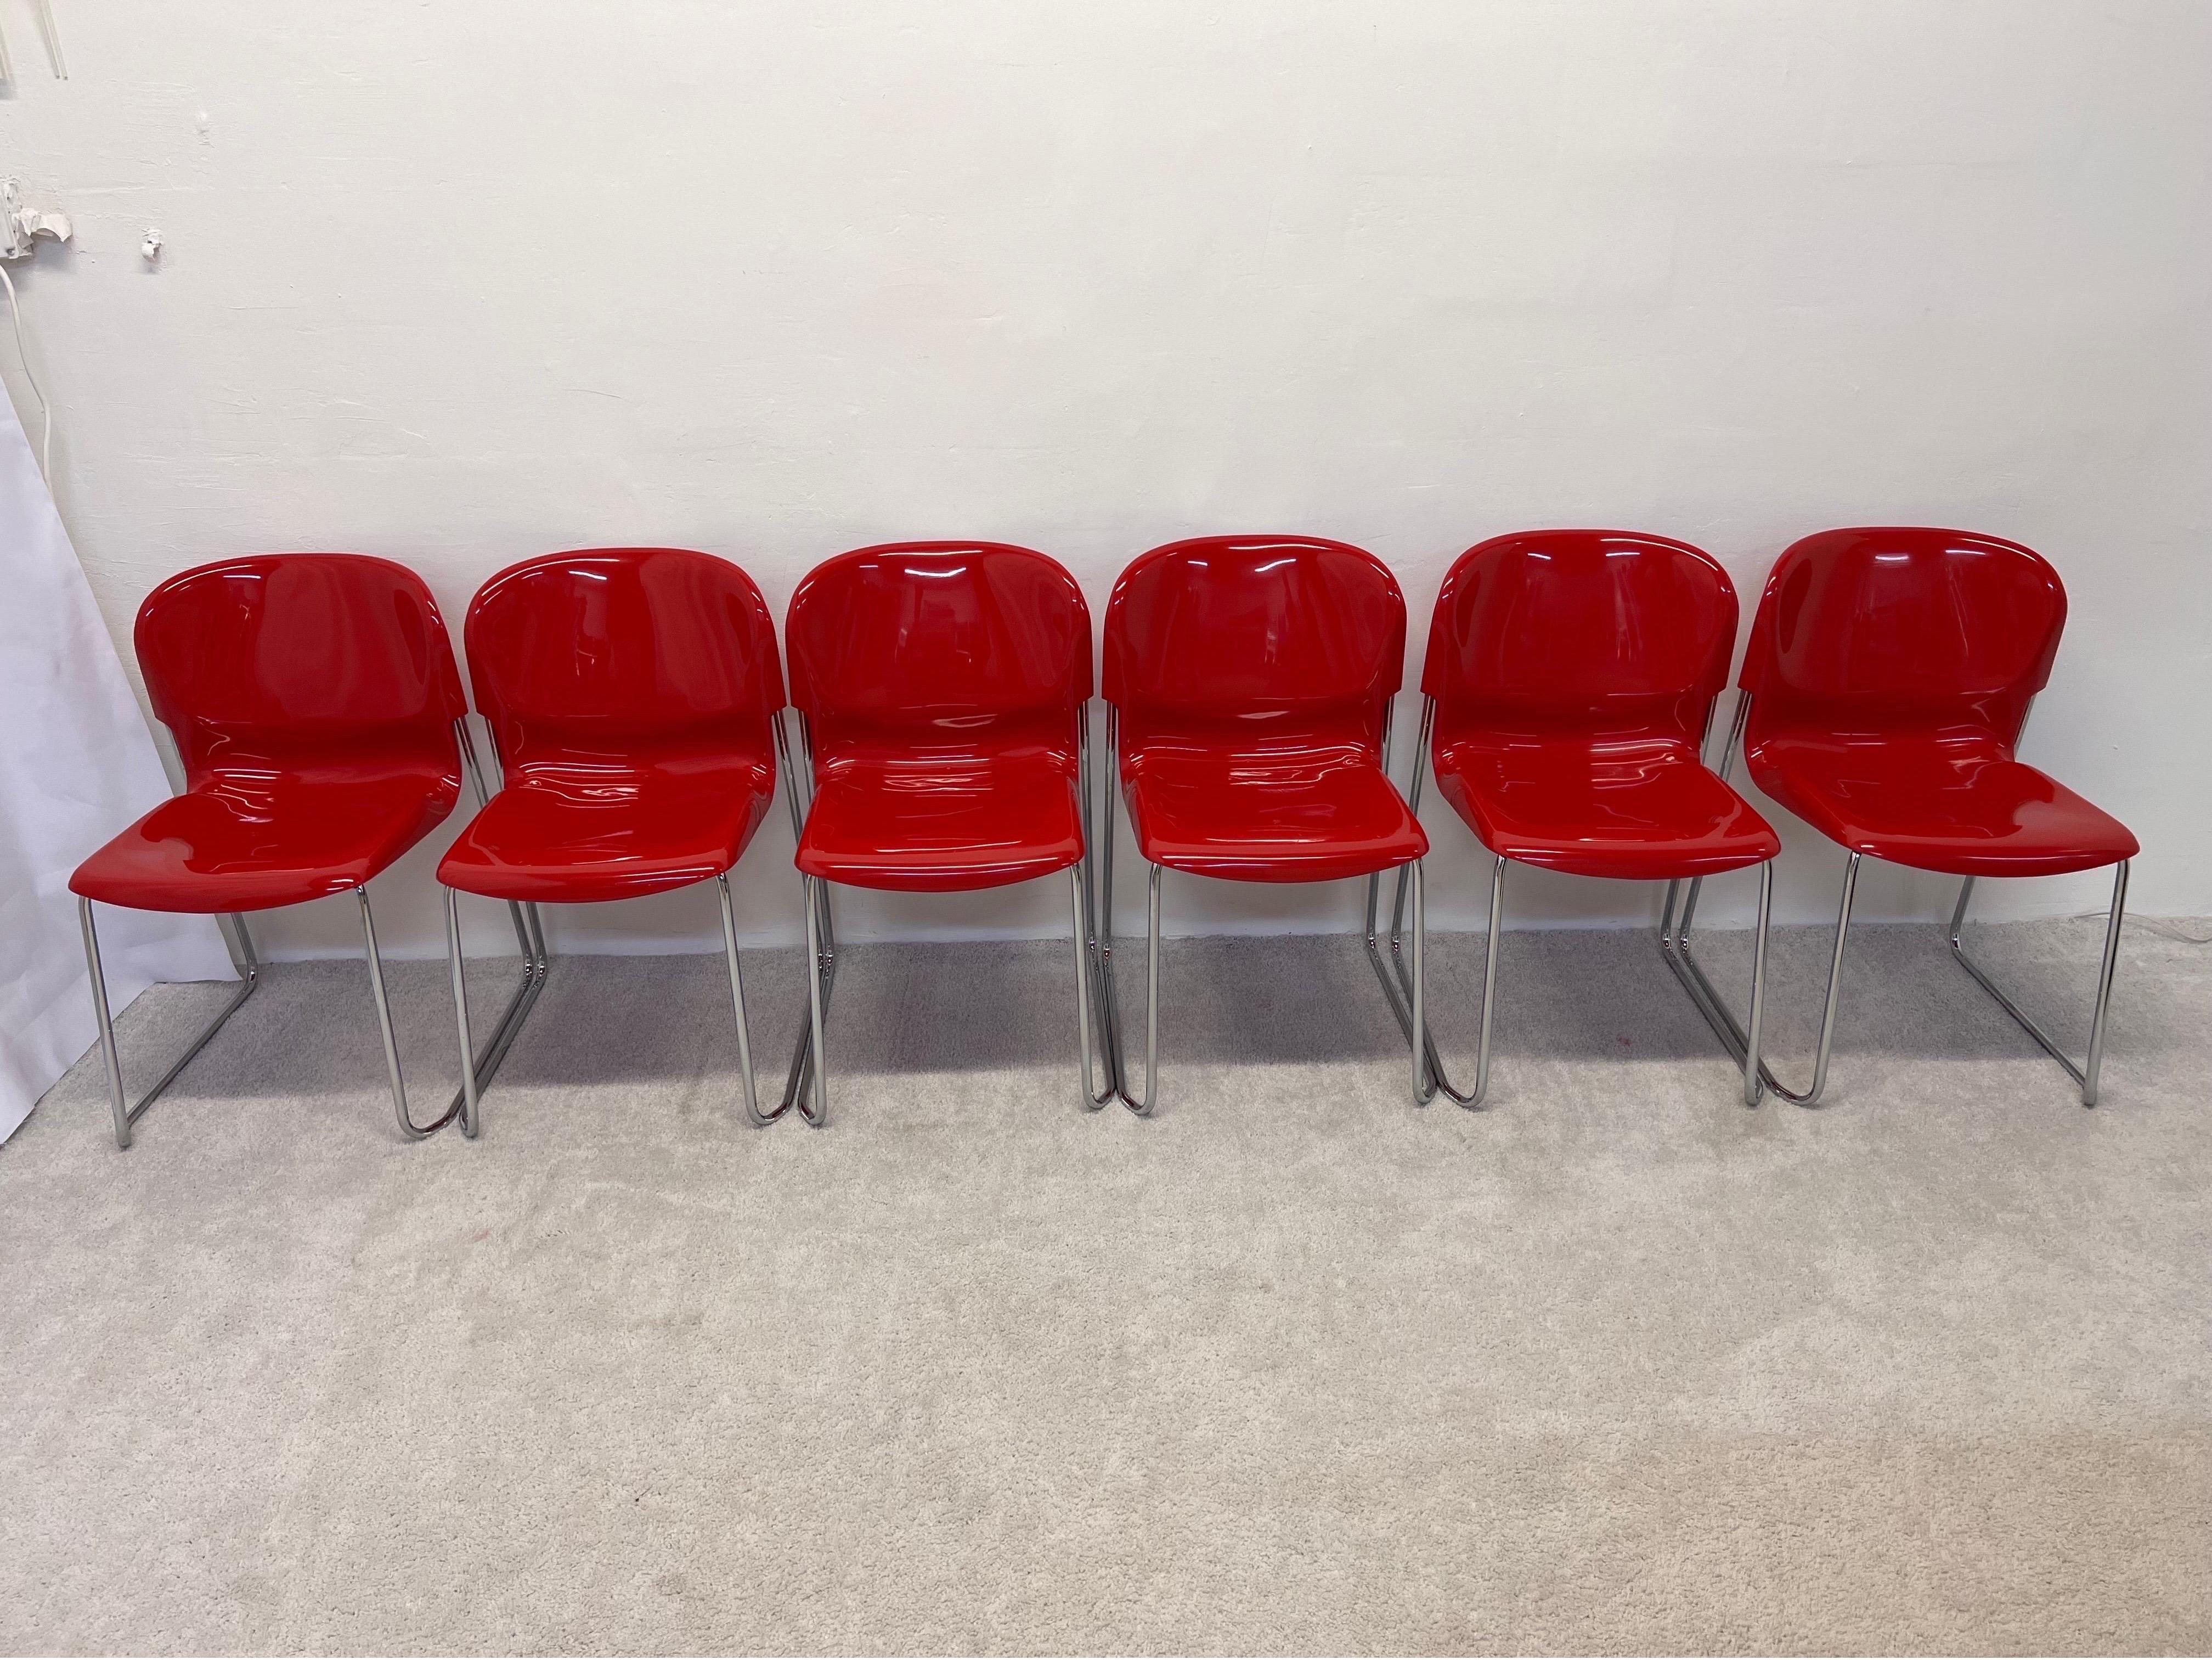 Ensemble de six chaises de salle à manger empilables avec sièges en plastique moulé rouge brillant sur pieds tubulaires chromés, conçues par Gerd Lange pour Atelier International, années 1980. Conçu à l'origine dans les années 1960, cet ensemble a